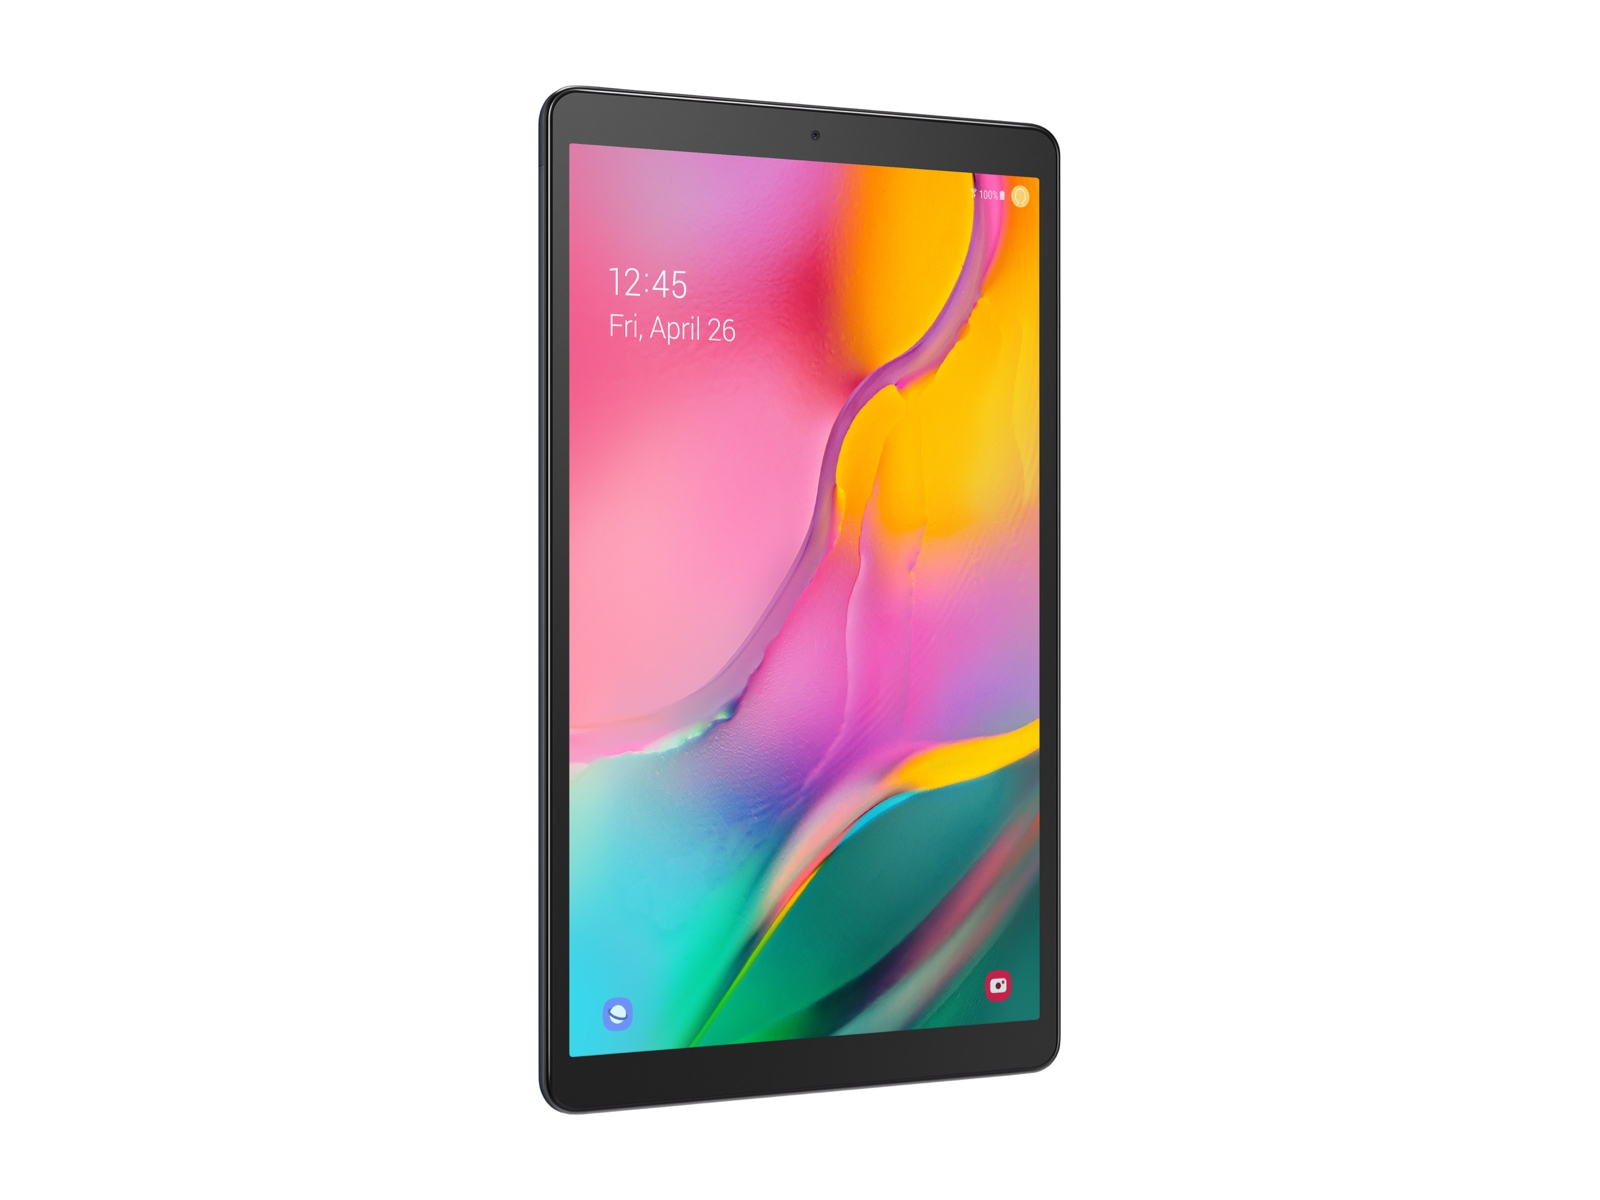 Uitbeelding Bewolkt Flash Galaxy Tab A 10.1 2019 32GB Black Wi Fi Tablets - SM-T510NZKAXAR | Samsung  US